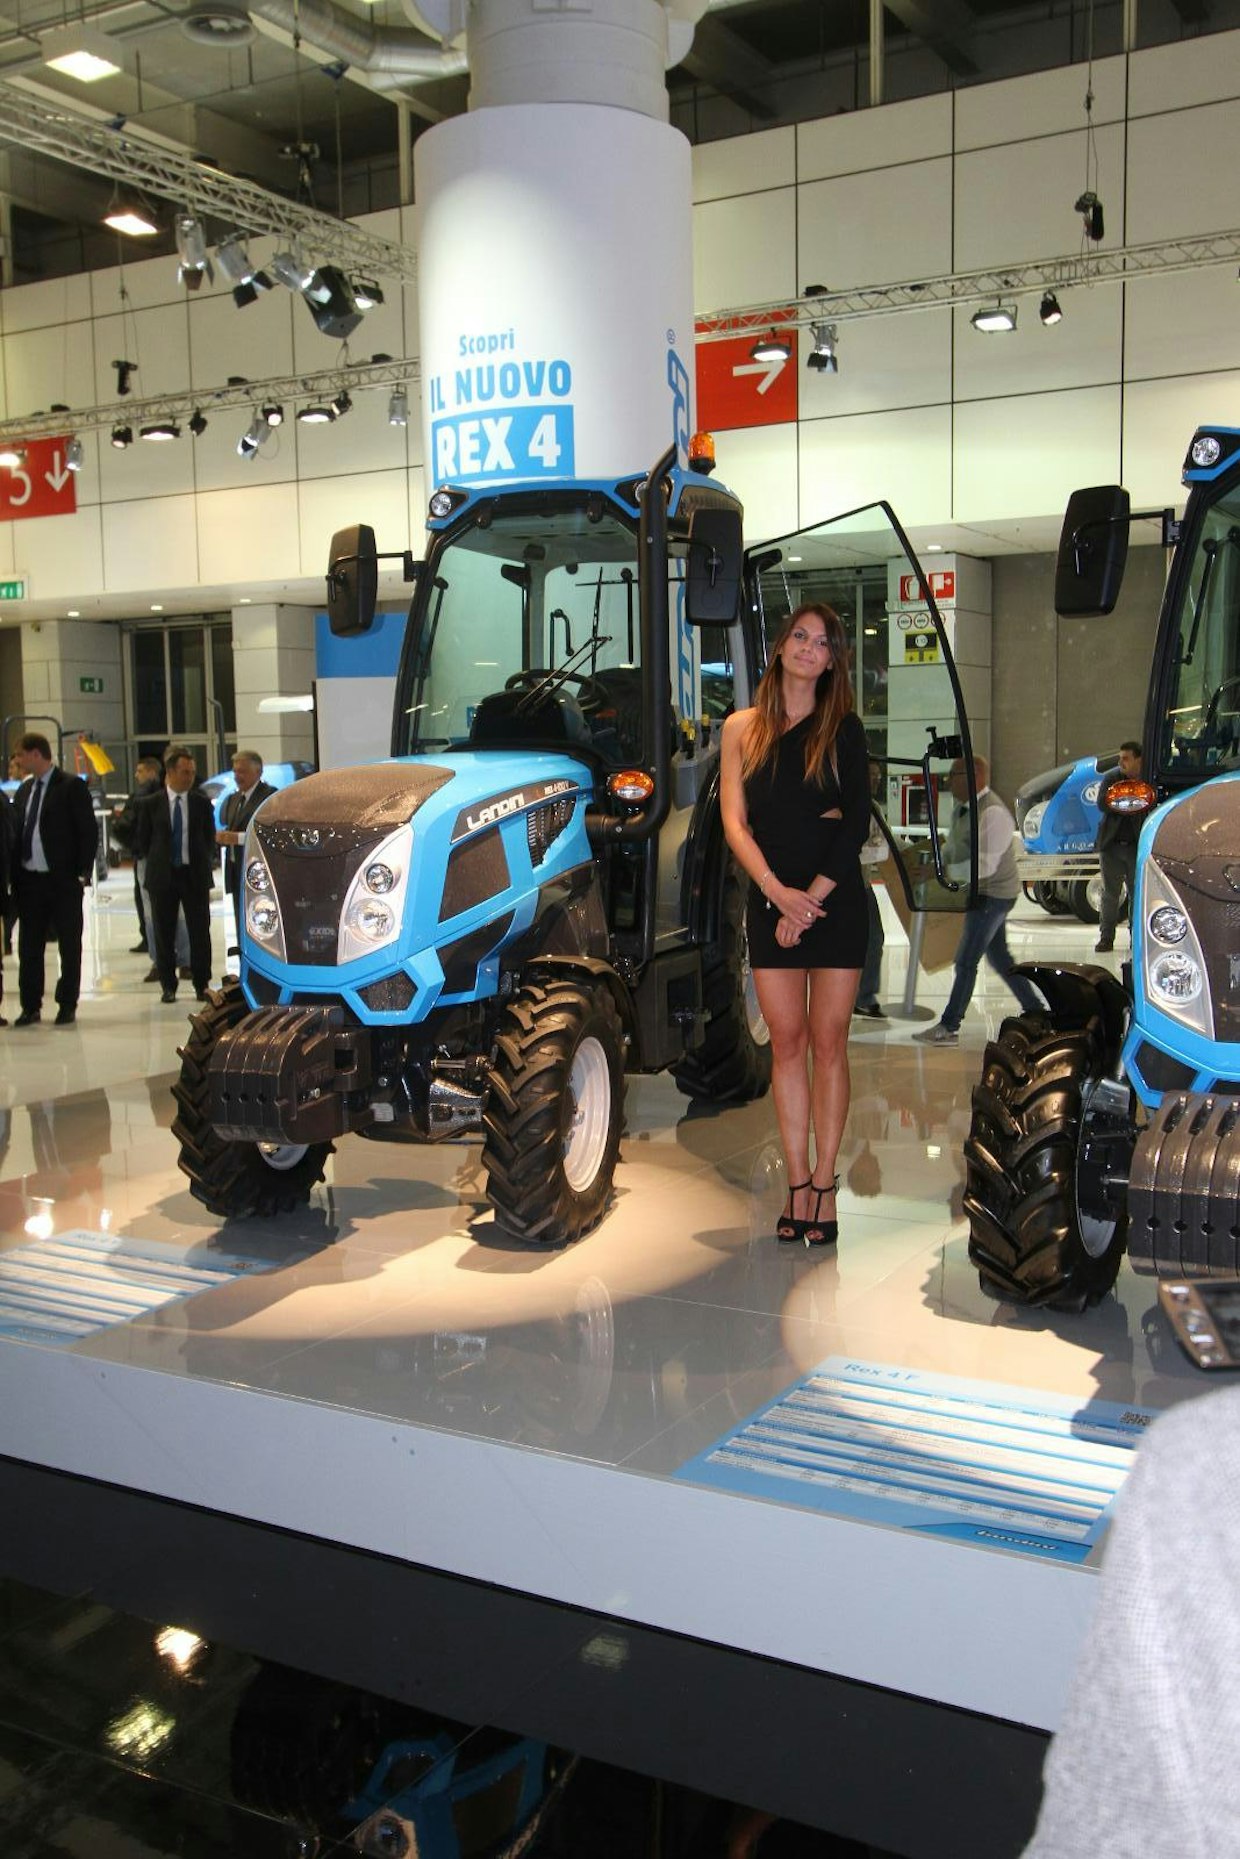 Landini Rego on uusi traktorisarja, joka on varustettu 2,9 litran Deutz-moottorilla. Mallistossa on monta versiota käyttötarkoituksen mukaan. Suurin ero on raideleveys, kunnallistekniikkaan ja maatalouteen suunnitellut mallit ovat viinin ja hedelmien viljelyssä käytettäviä traktoreita leveämpiä. Kapeat ja leveät malliversiot voidaan toimittaa myös ilmaan ohjaamoa.